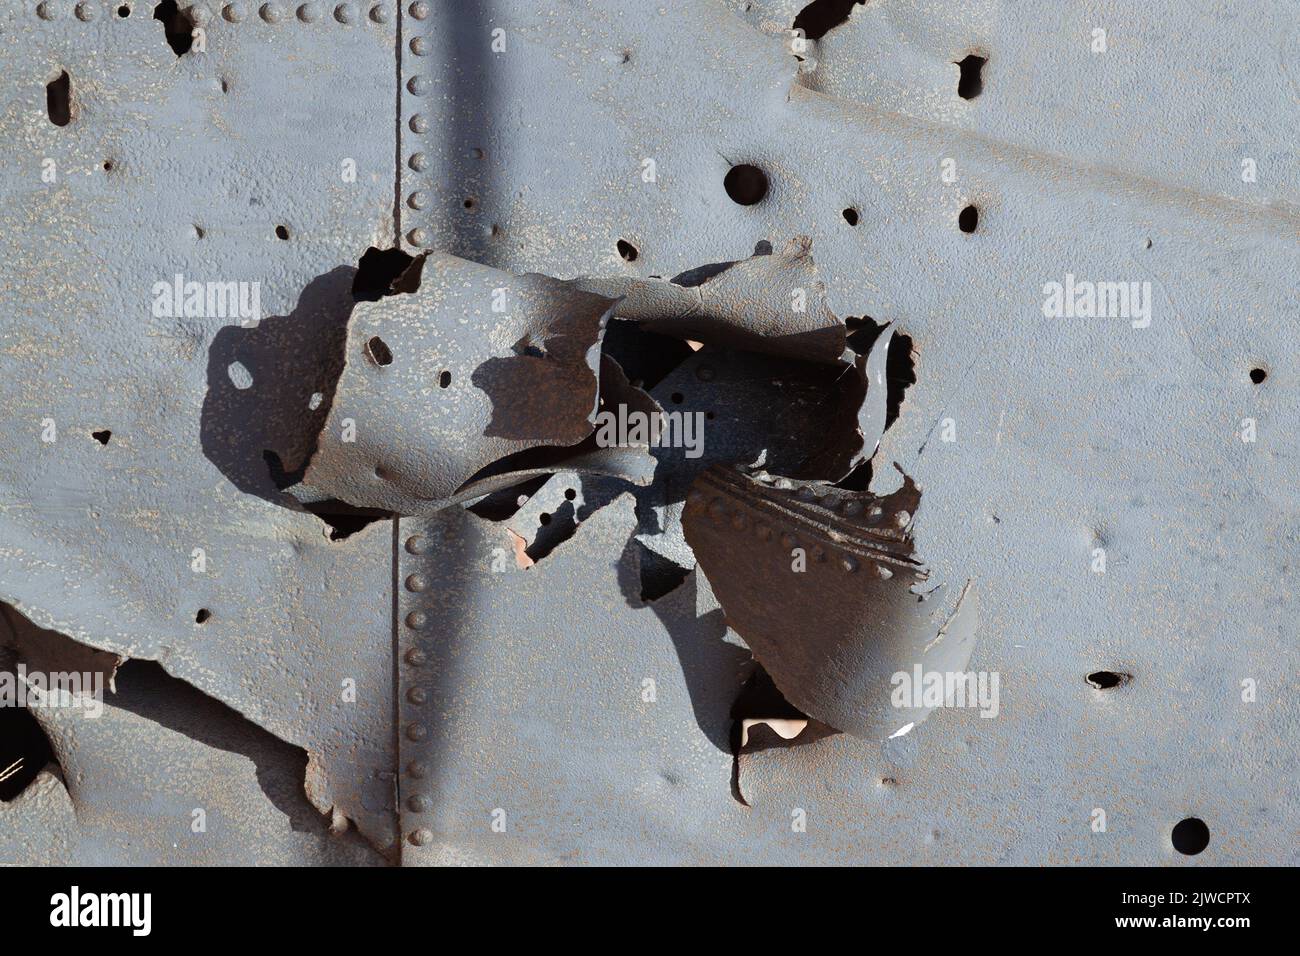 Stahlblech, durchbohrt von einer Artilleriebgranate. Stockfoto